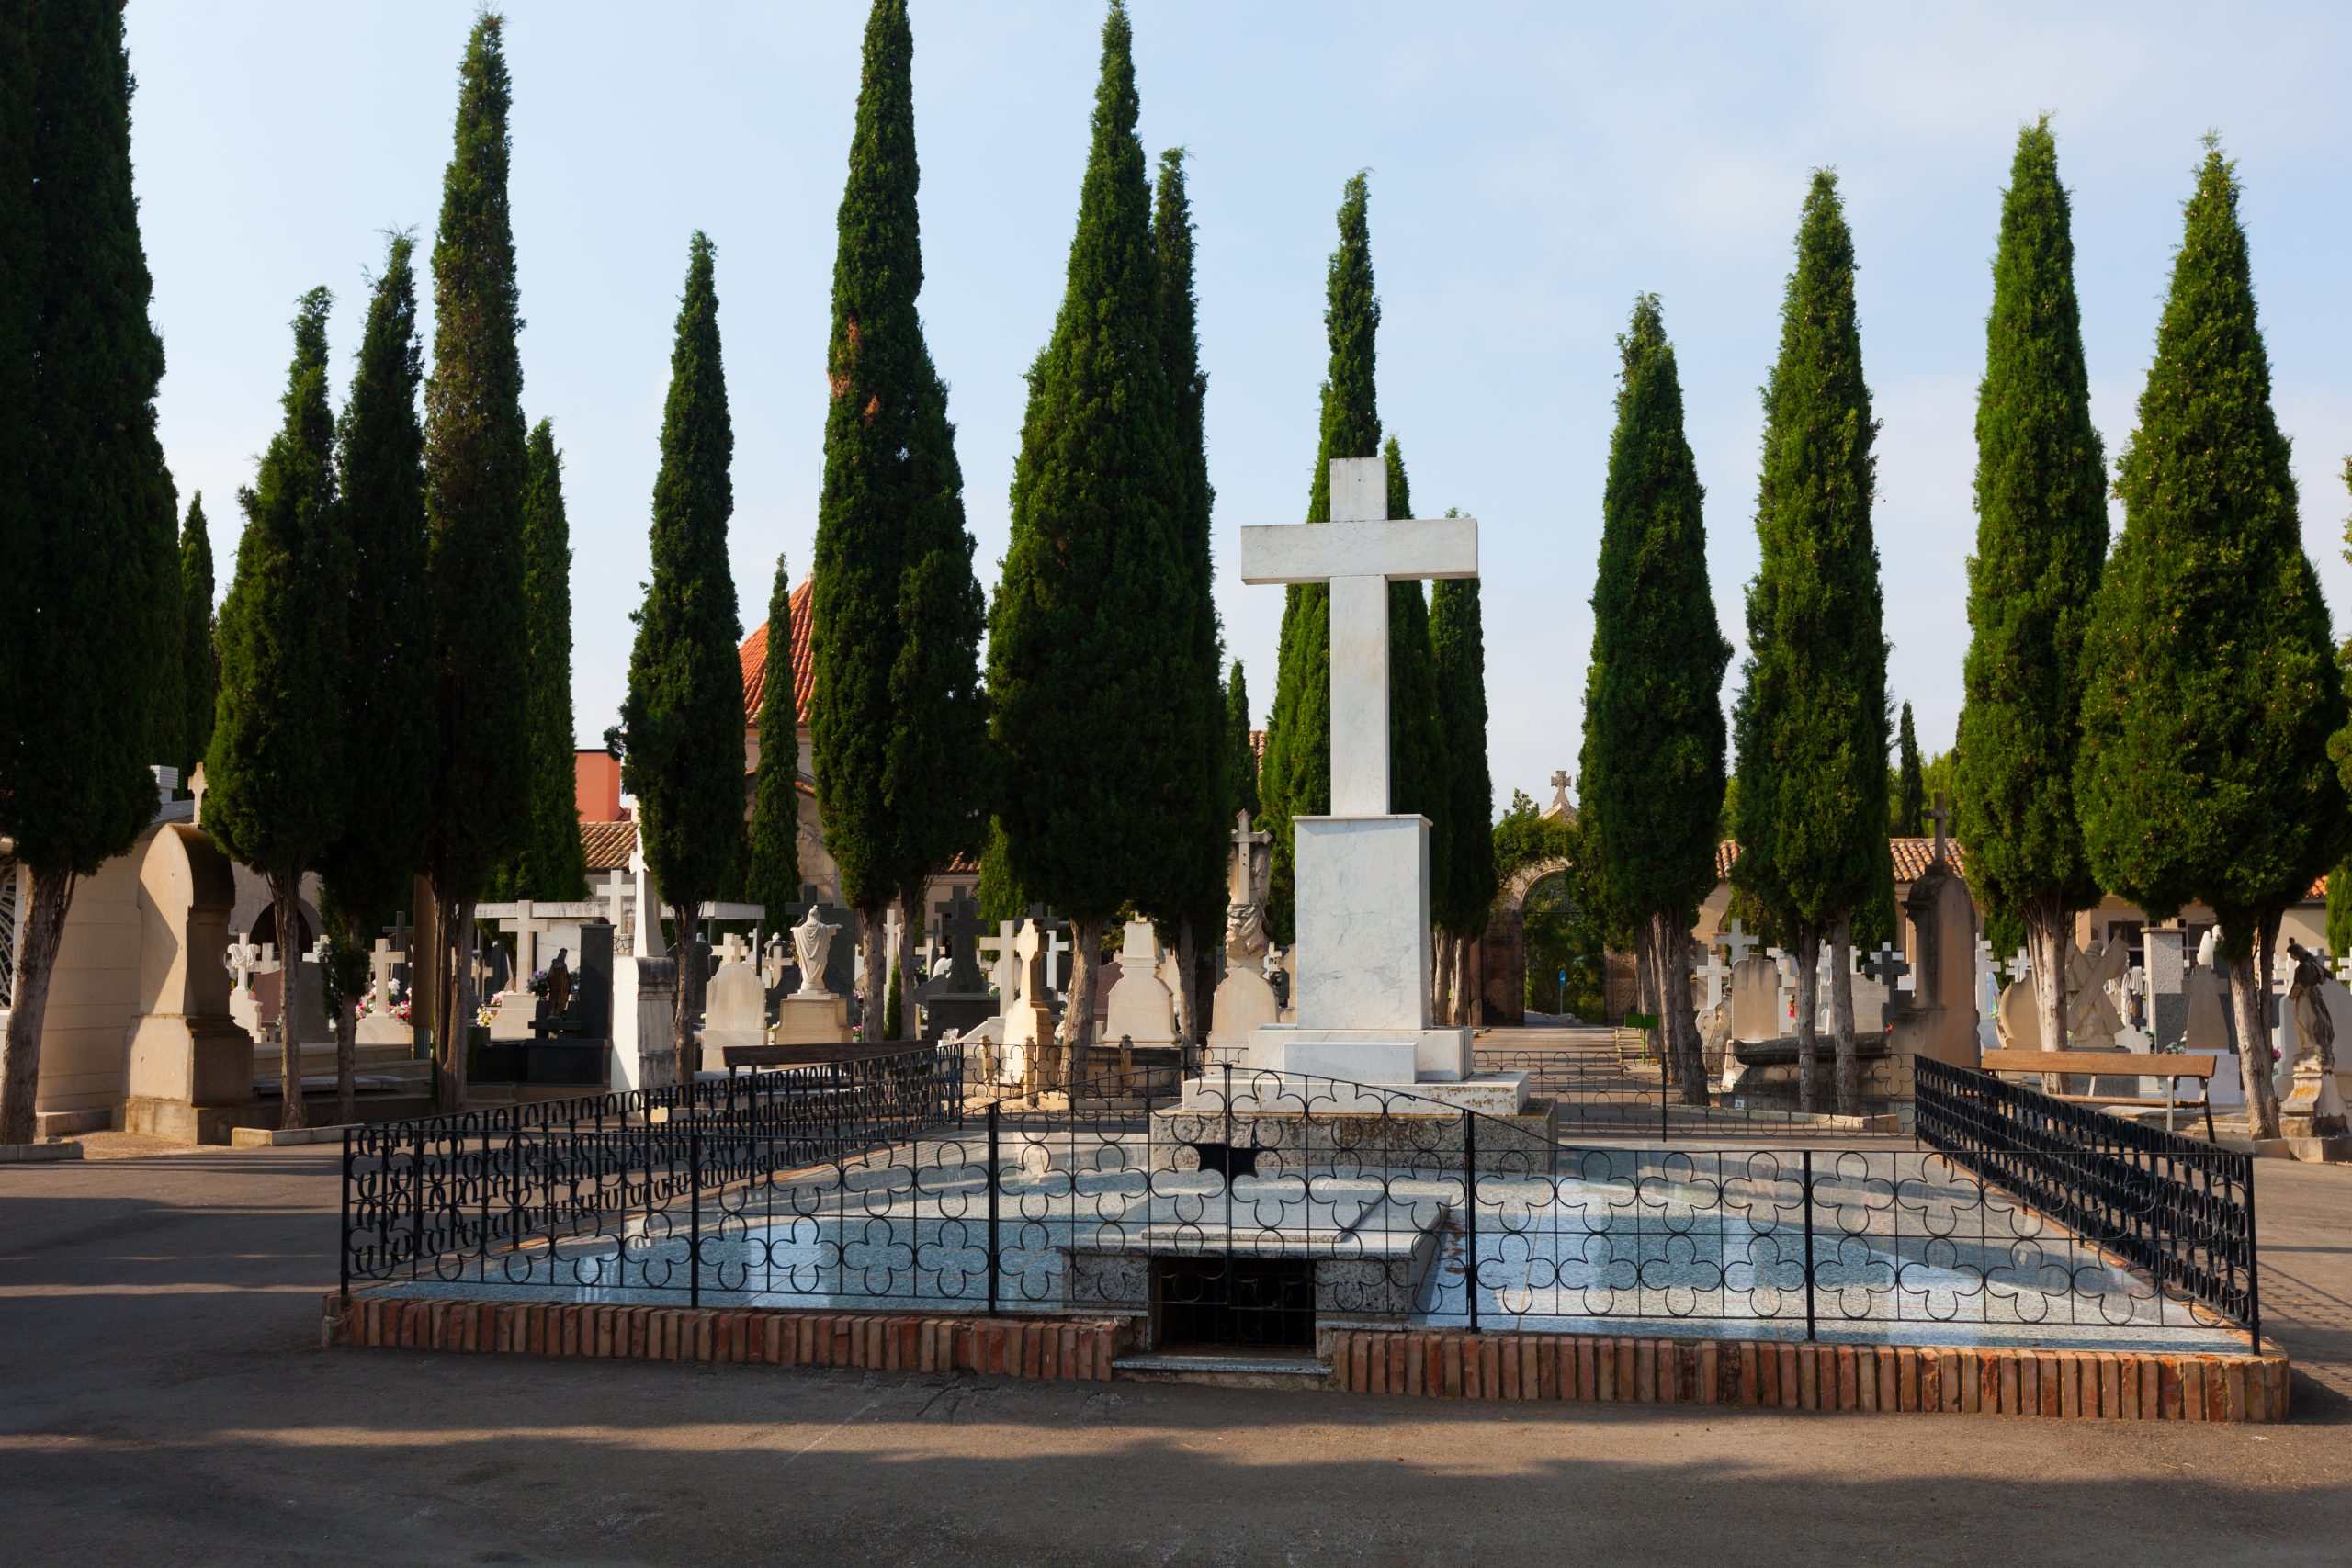 The Recoleta Cemetery